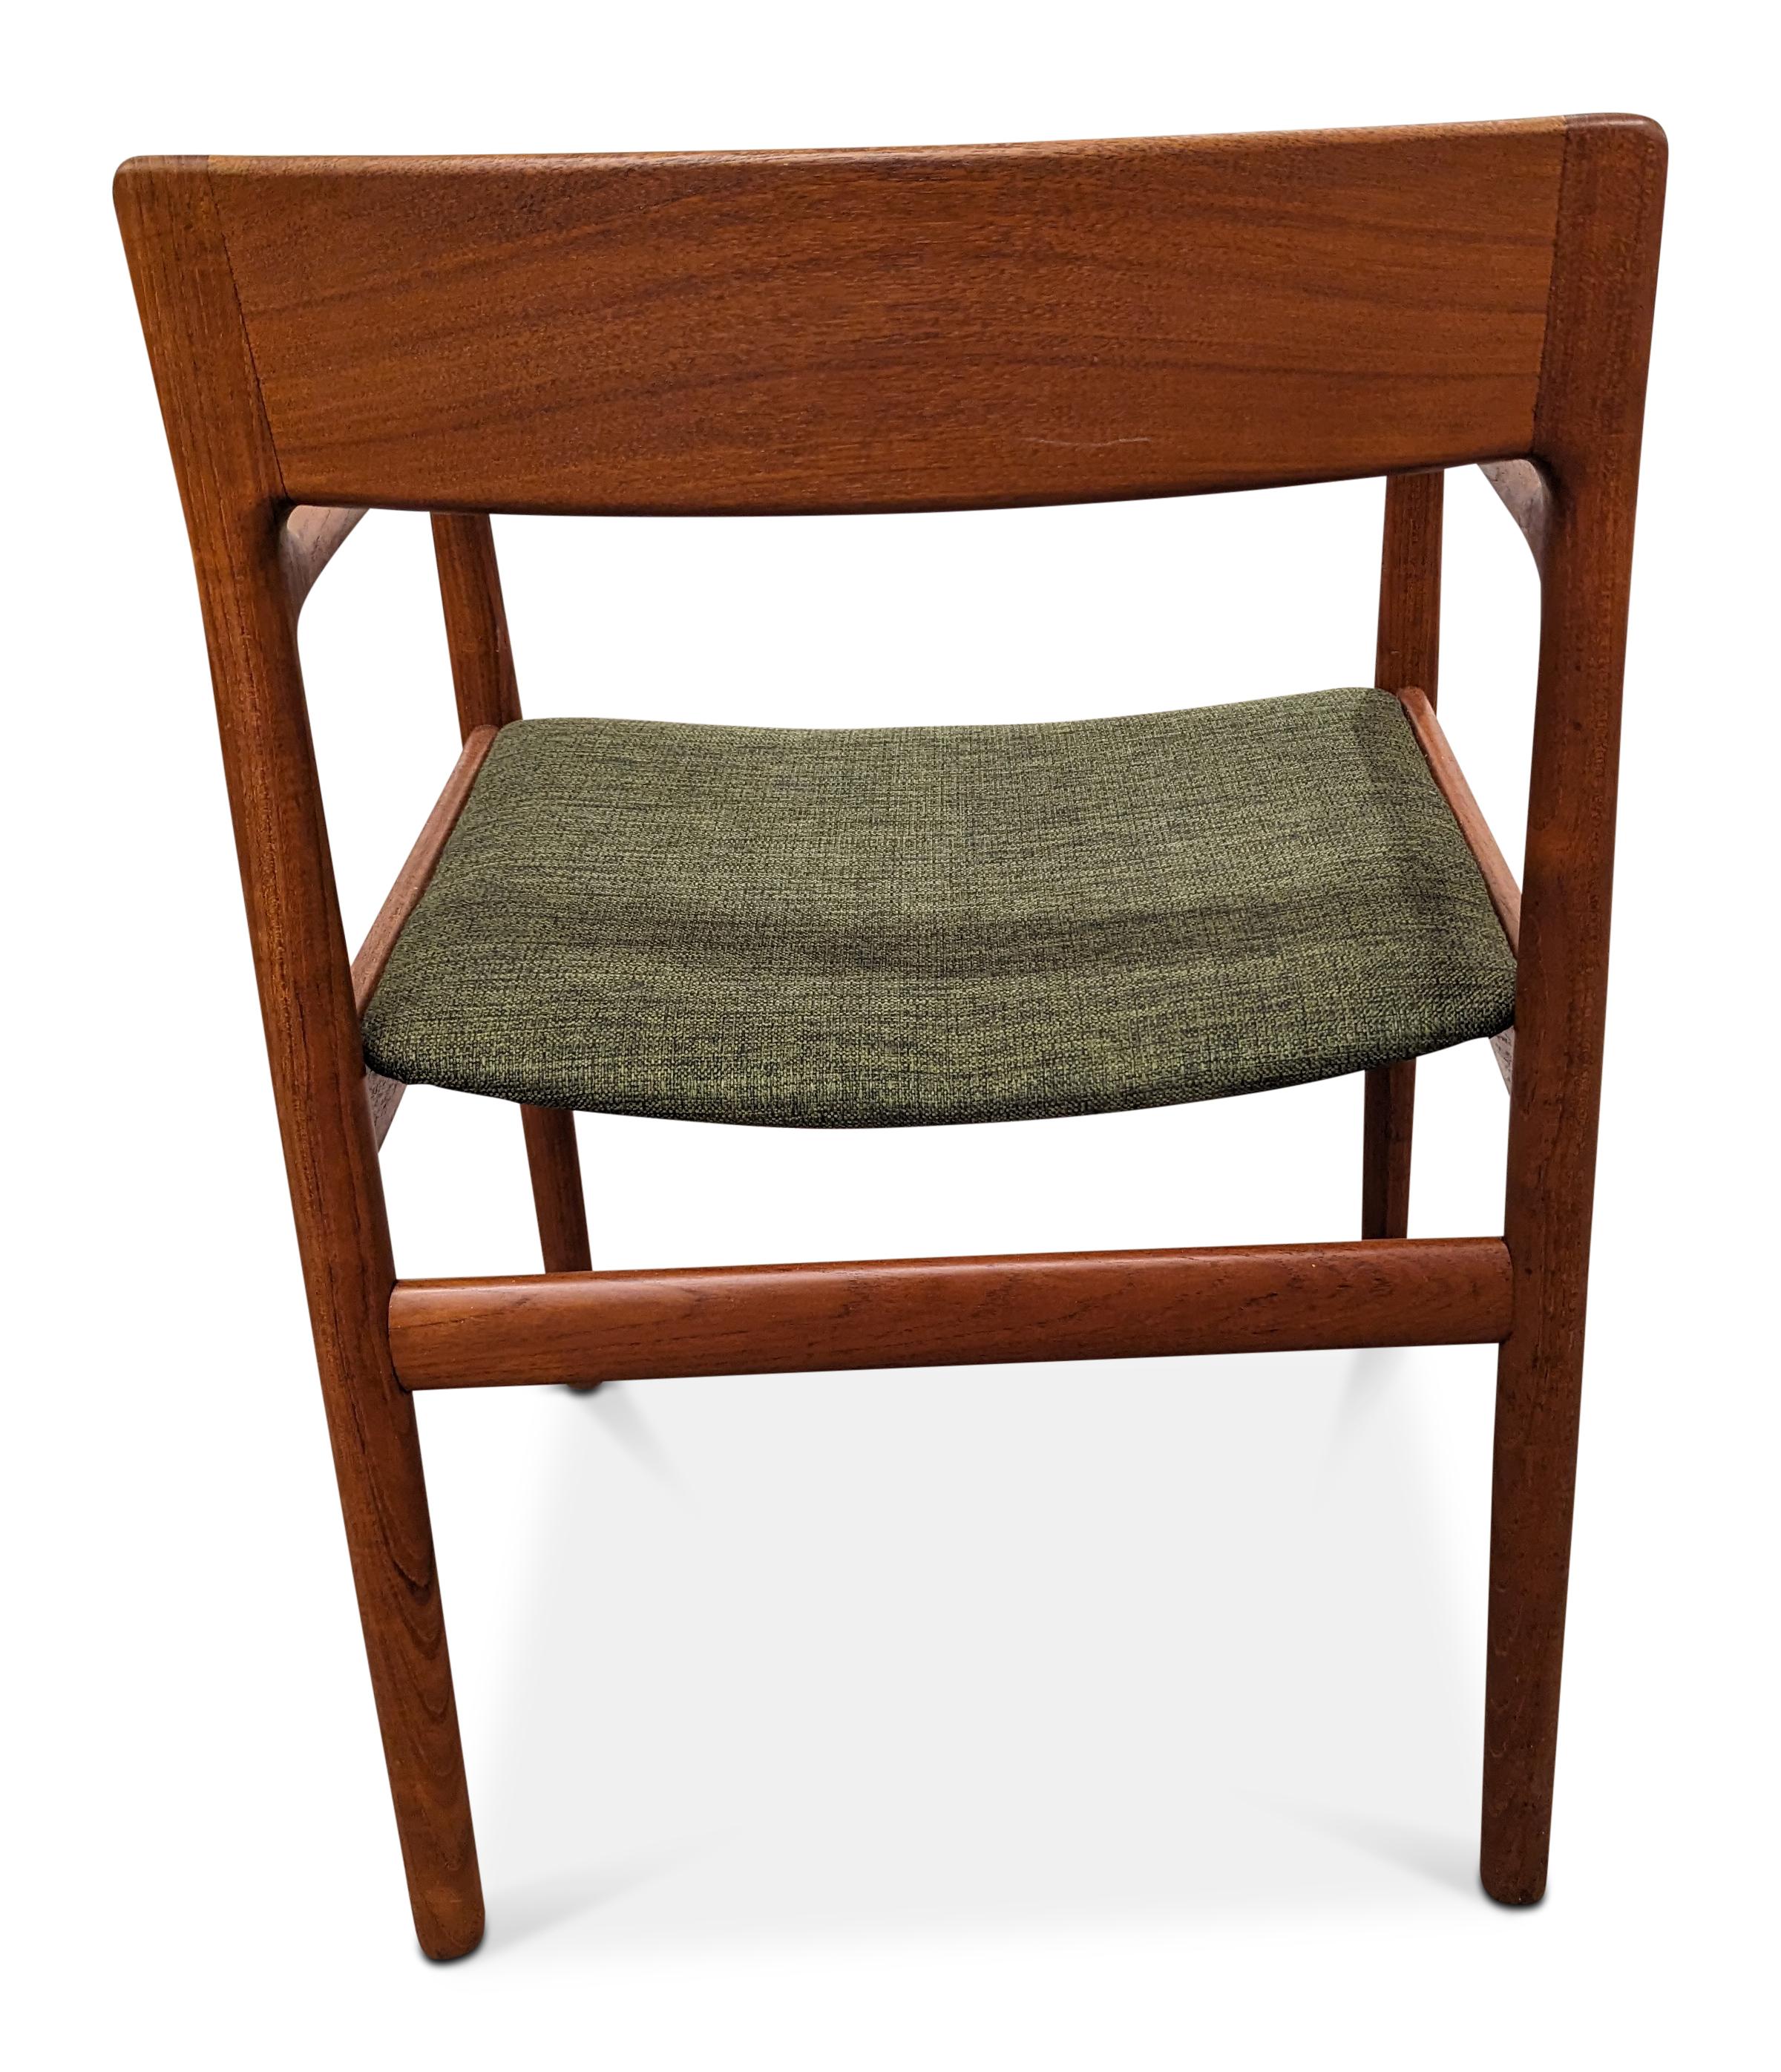 Norregard Moeblefabrik Teak Desk Chairs - 022484 Vintage Danish Mid Century  In Good Condition For Sale In Jersey City, NJ